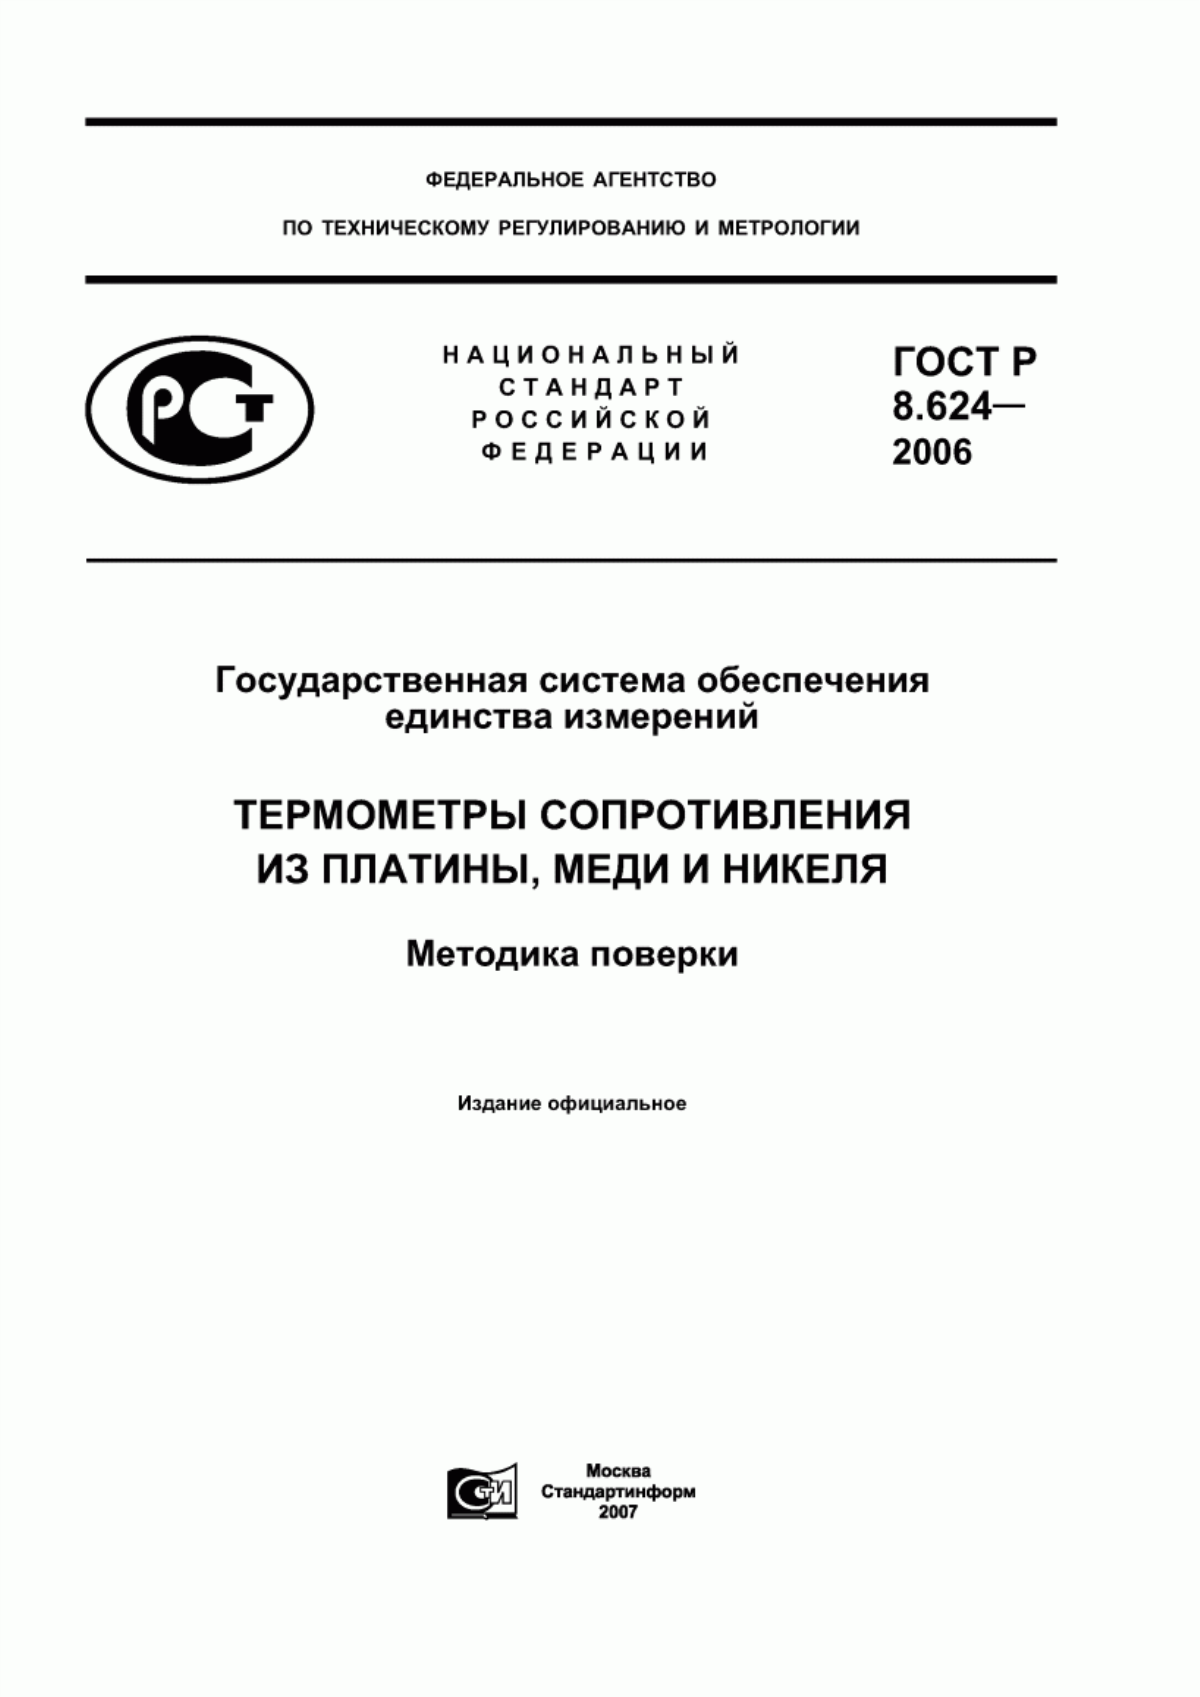 ГОСТ Р 8.624-2006 Государственная система обеспечения единства измерений. Термометры сопротивления из платины, меди и никеля. Методика поверки